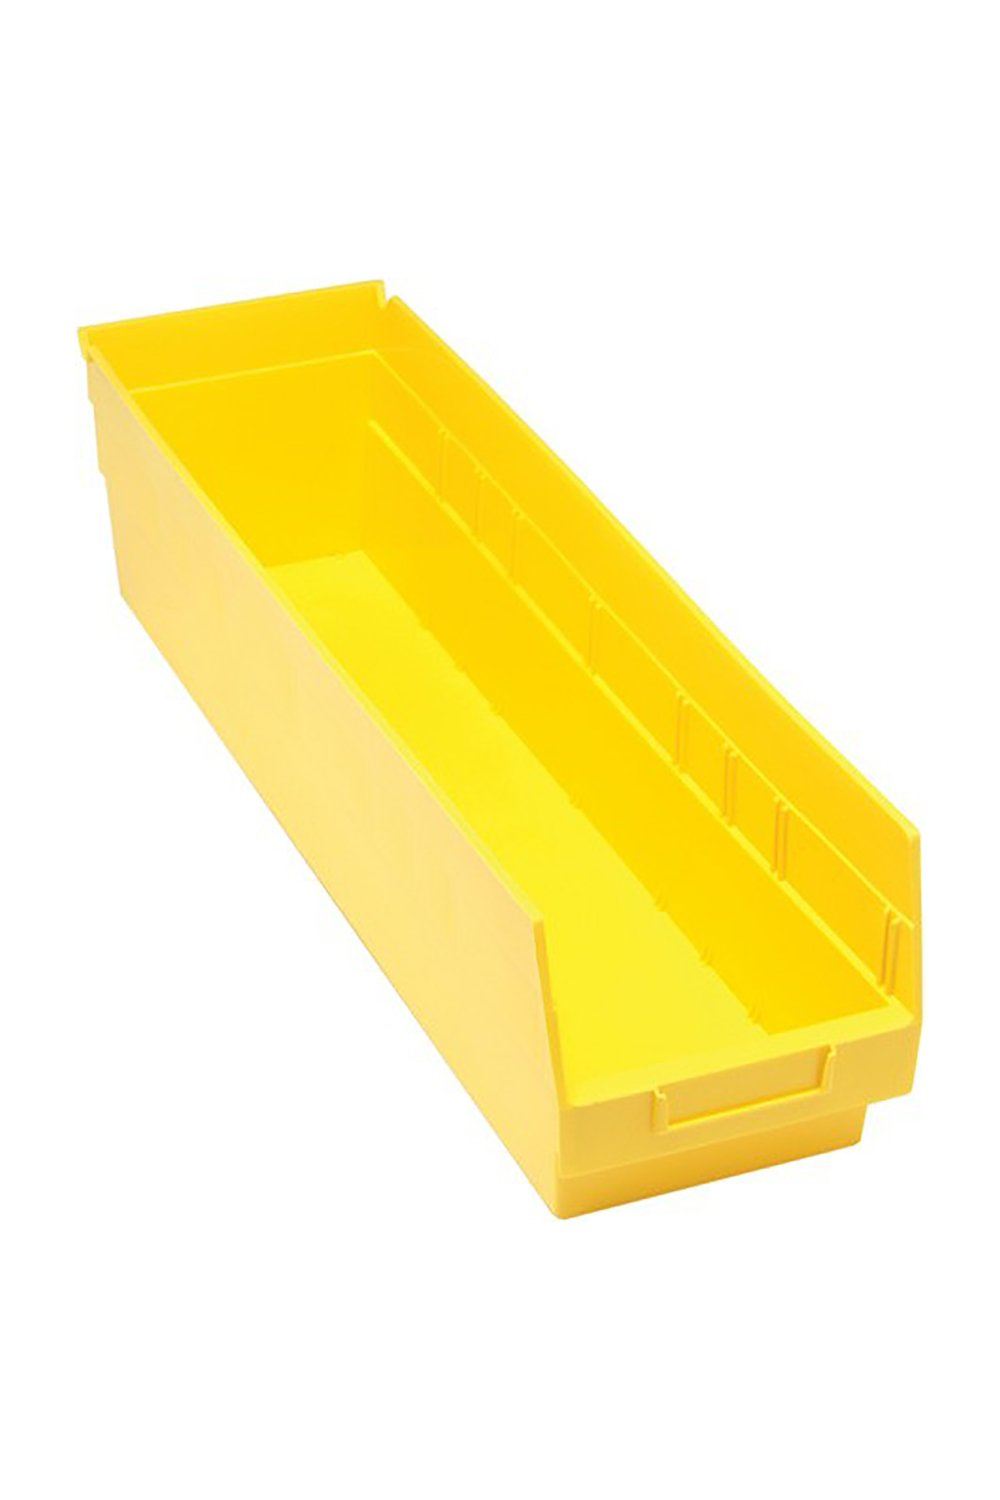 Shelf Bin for 24"D Shelves Bins & Containers Acart 23-5/8'' x 6-5/8'' x 6'' Yellow 